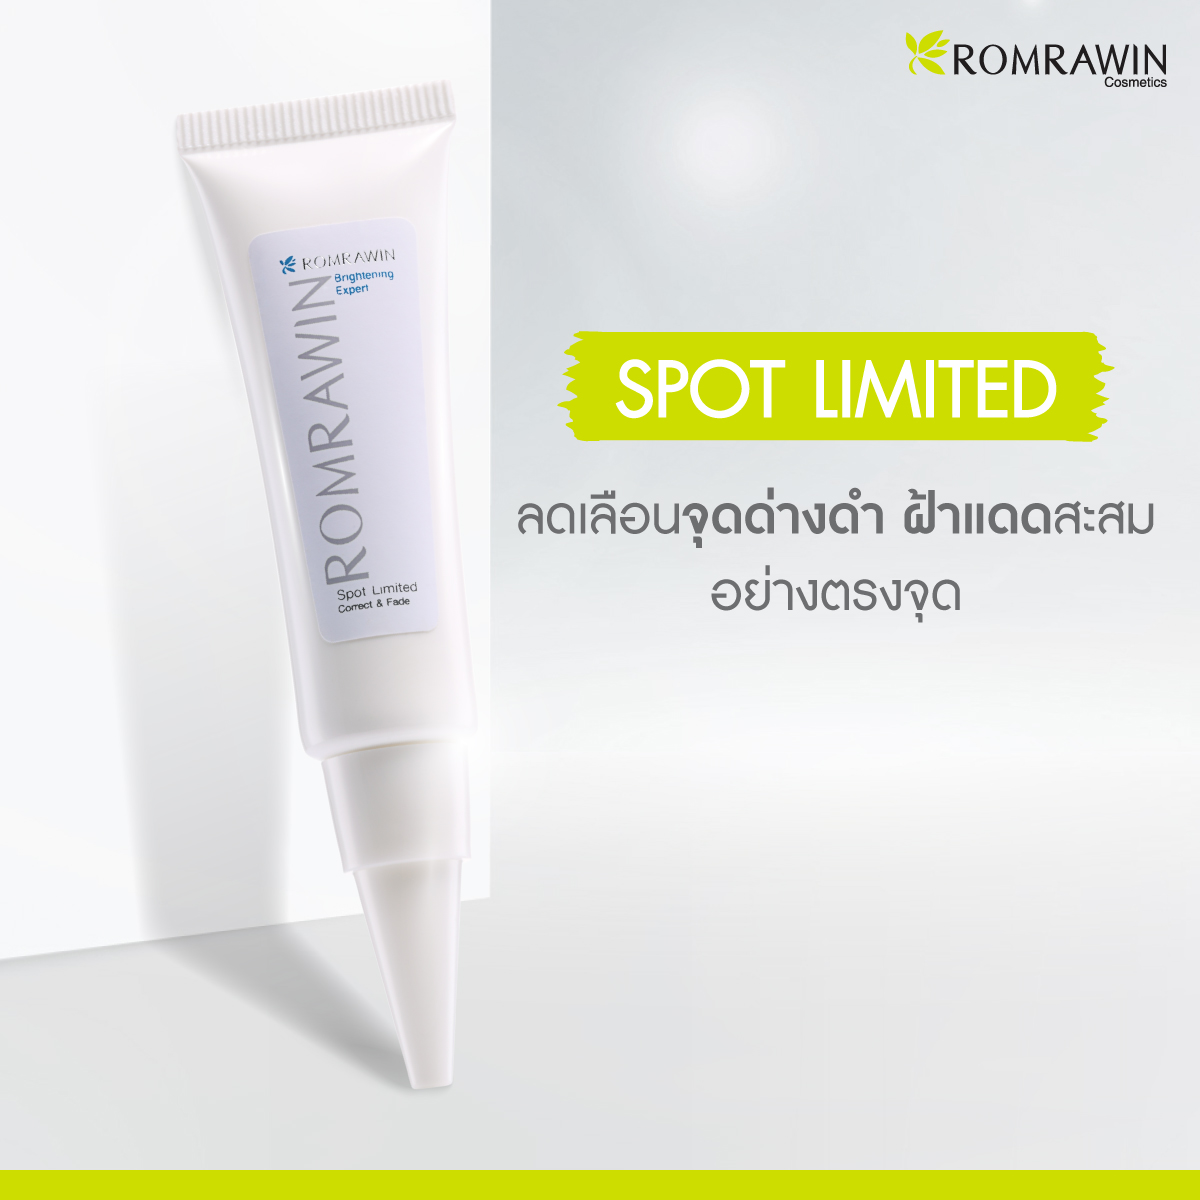 รมย์รวินท์ คอสเมติก (Romrawin Cosmetics) จัดโปรโมชั่น ครีมแต้มจุดด่างดำ Spot Limited ตลอดเดือนกันยายน